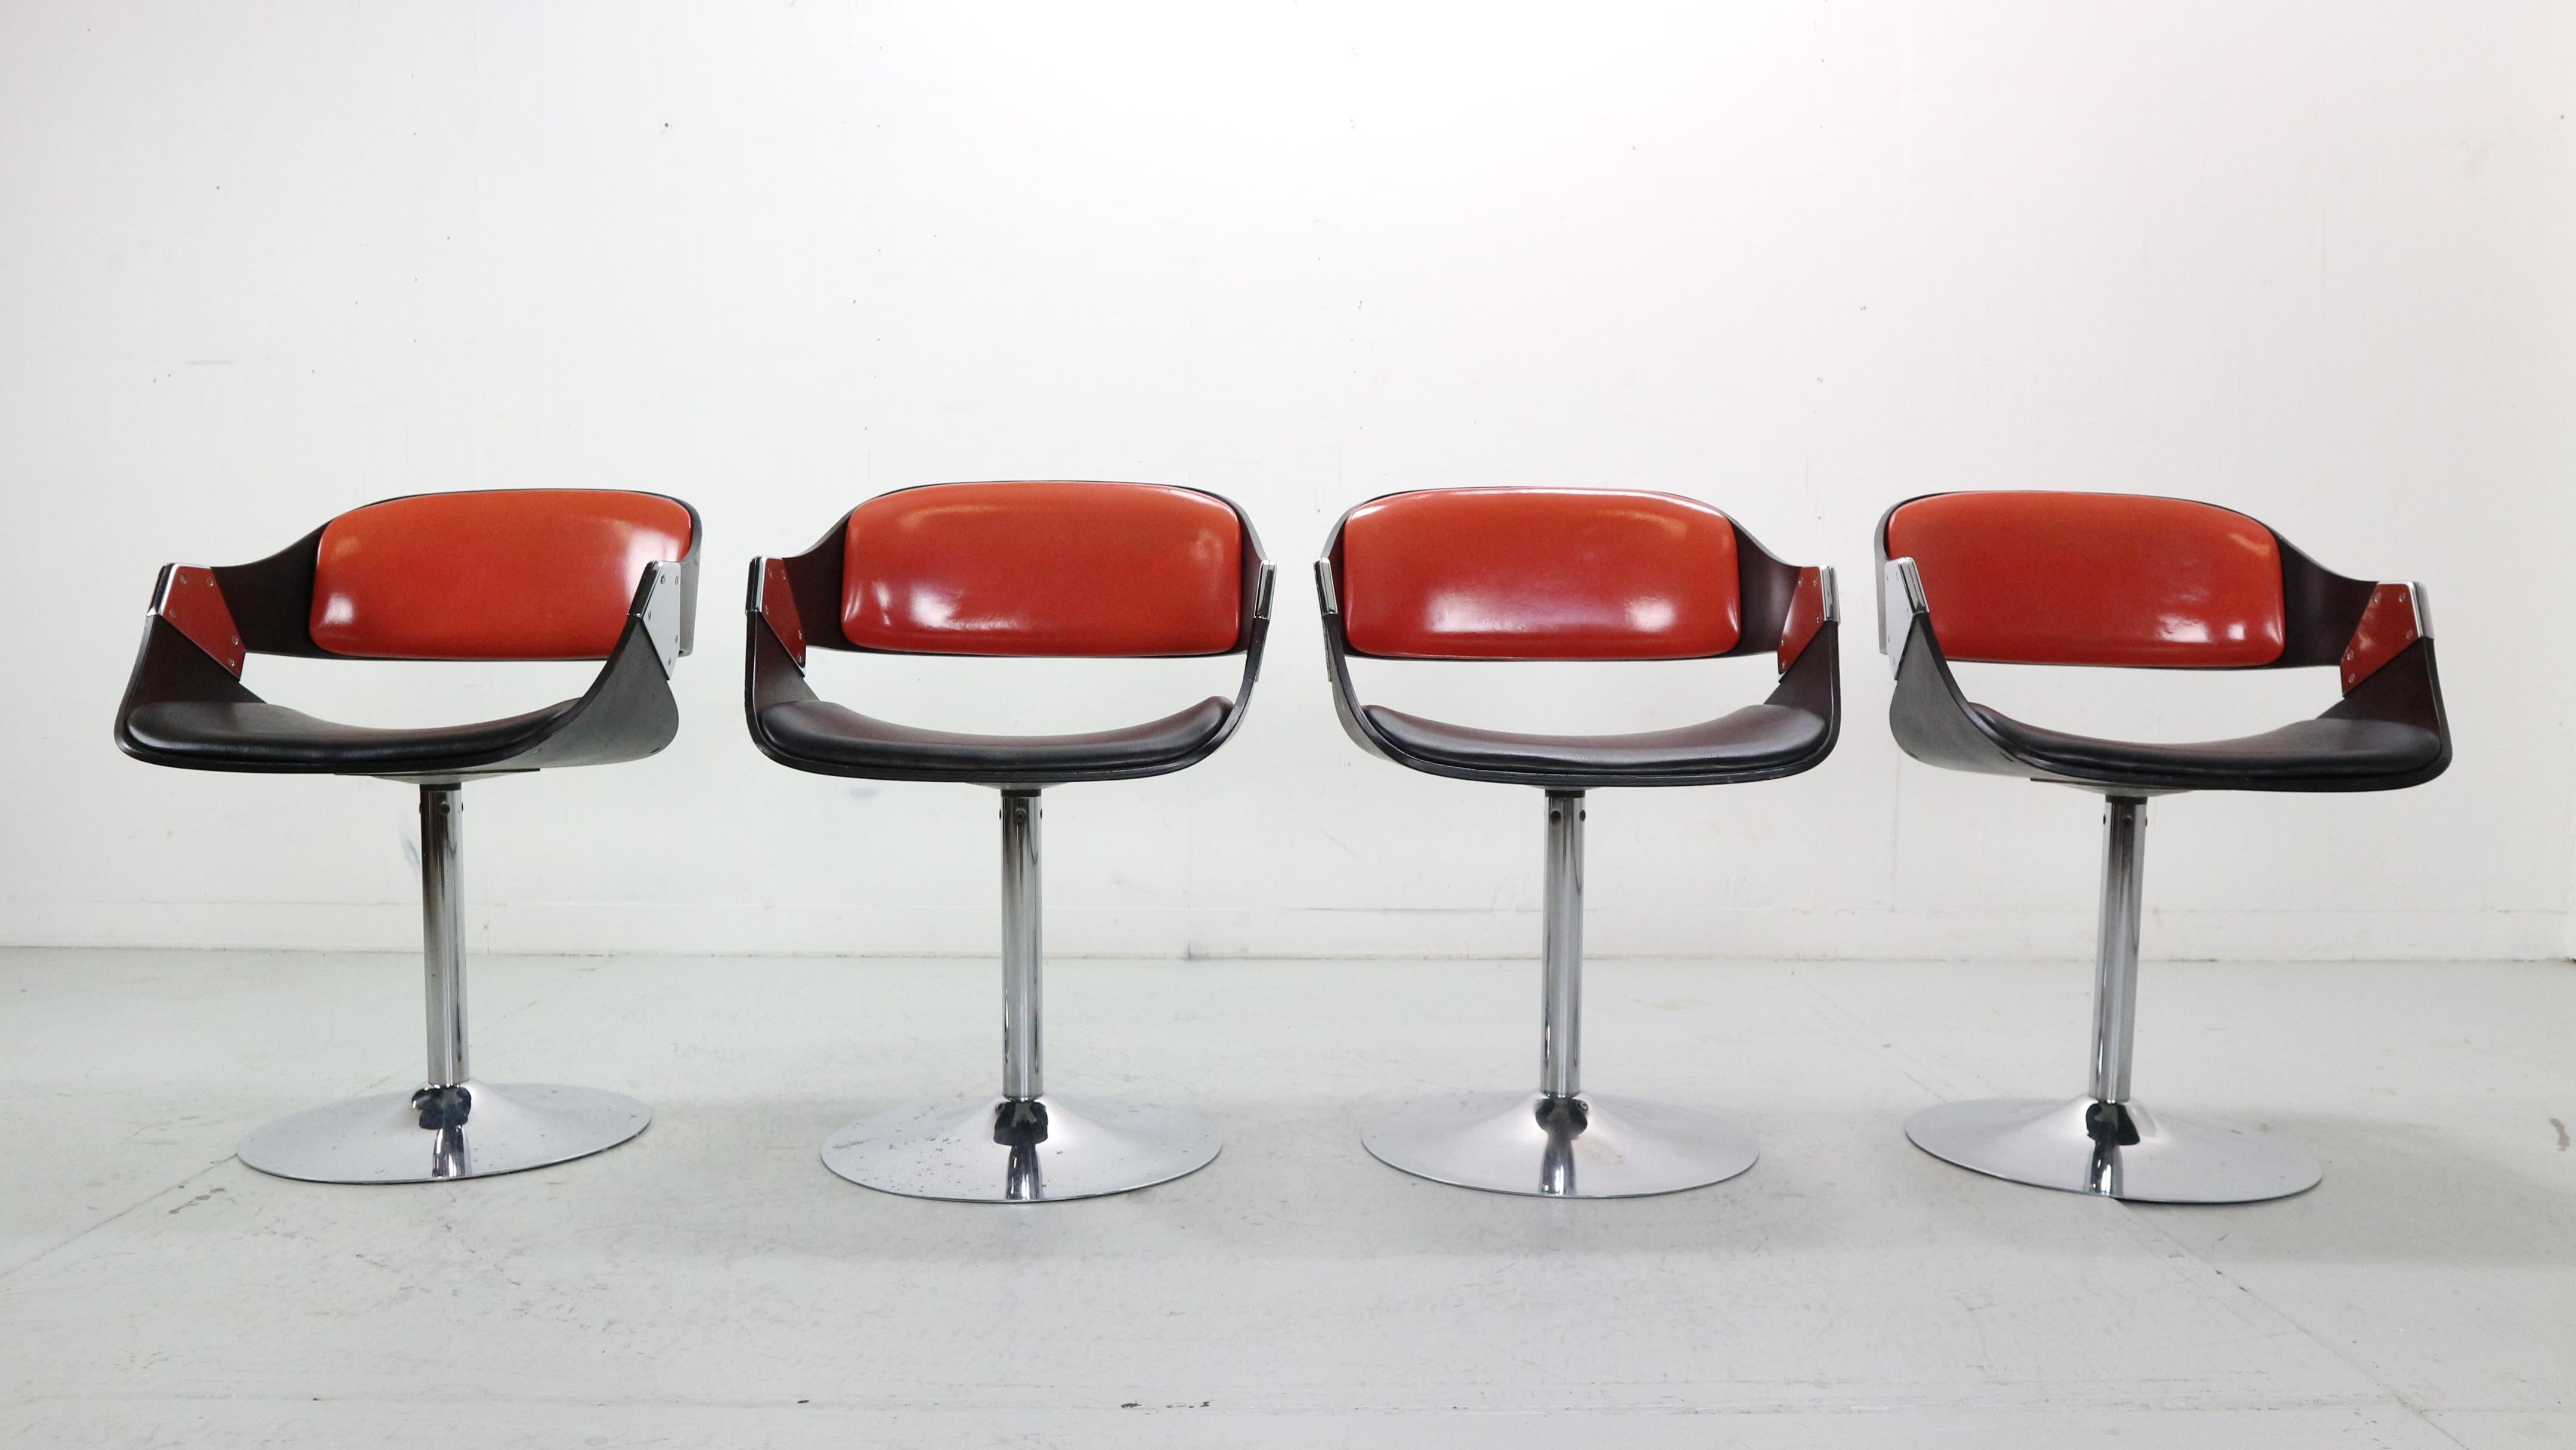 Ensemble de 4 chaises pivotantes de l'ère spatiale conçues par Rudi Verelst et fabriquées par Novalux, dans la Belgique des années 1970.

Modèle 